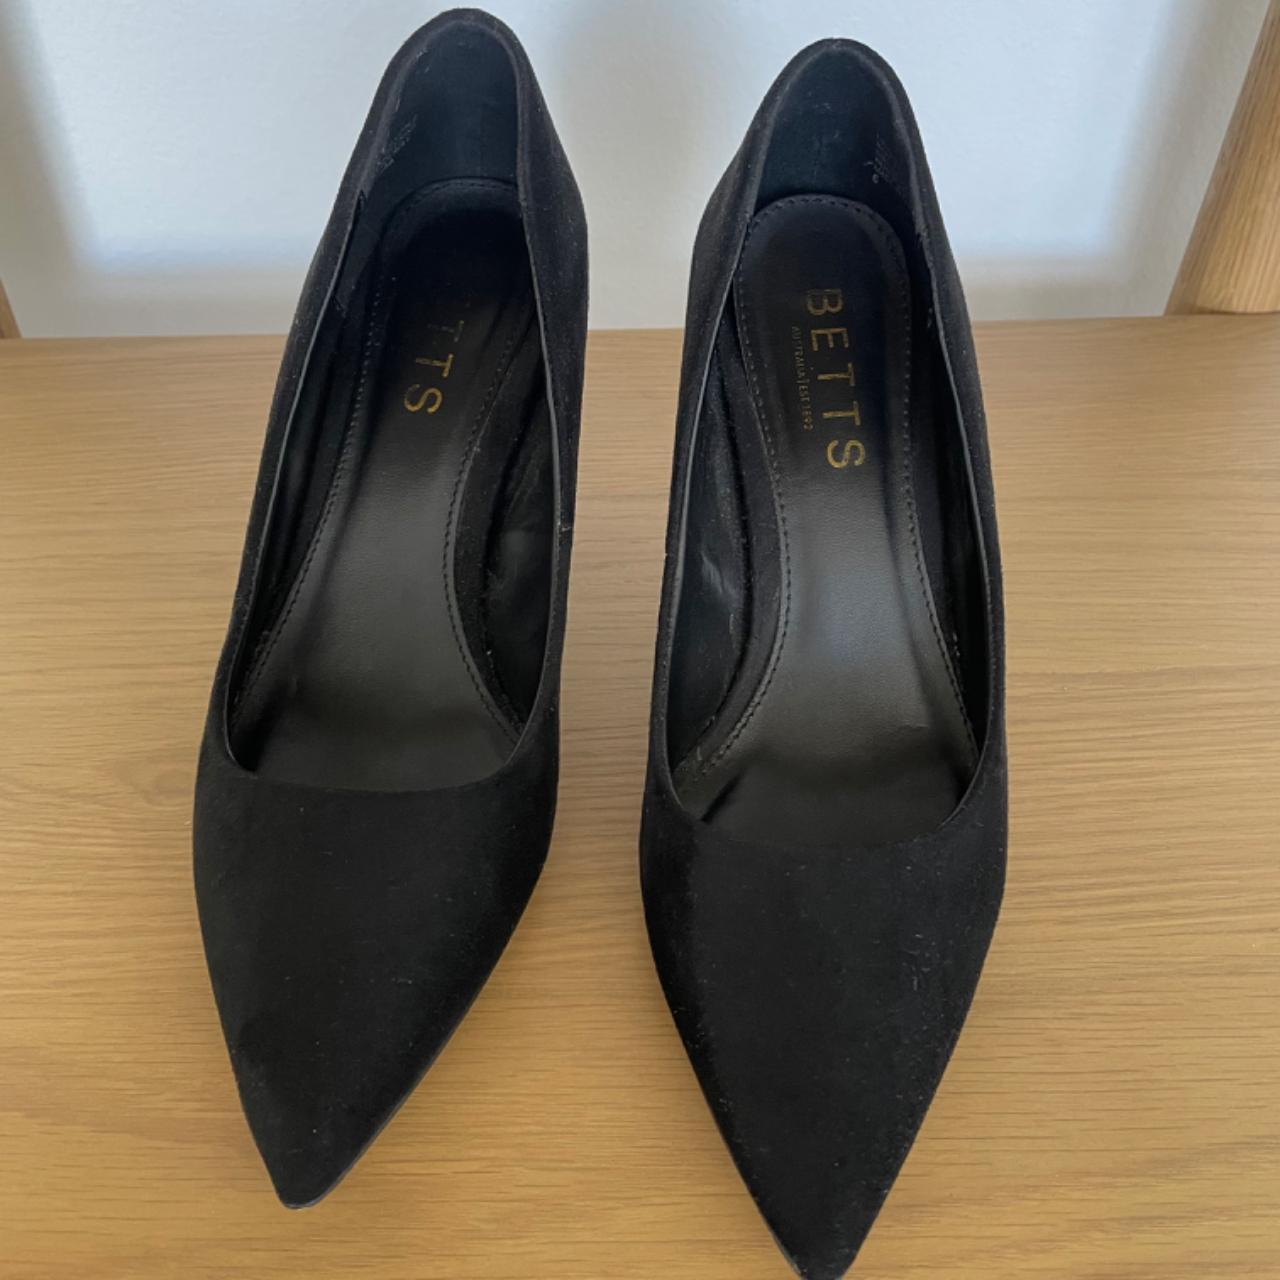 Betts Female High heels Black Price is negotiable - Depop